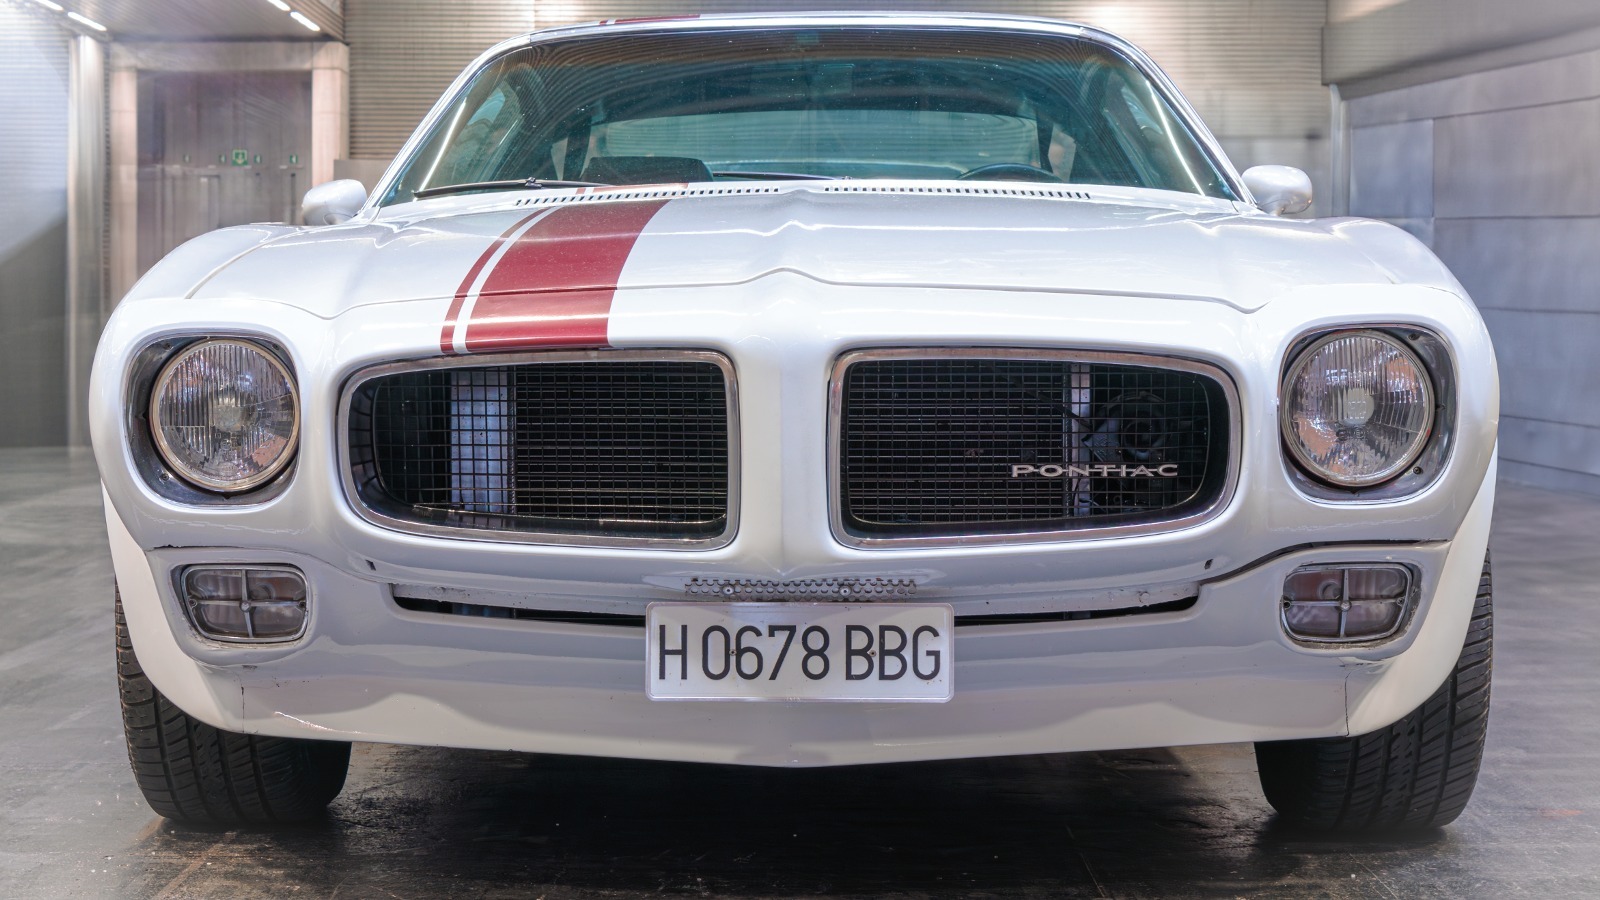 Datos sobre el Pontiac Firebird de 1970 que probablemente solo los fanáticos incondicionales de los autos conozcan